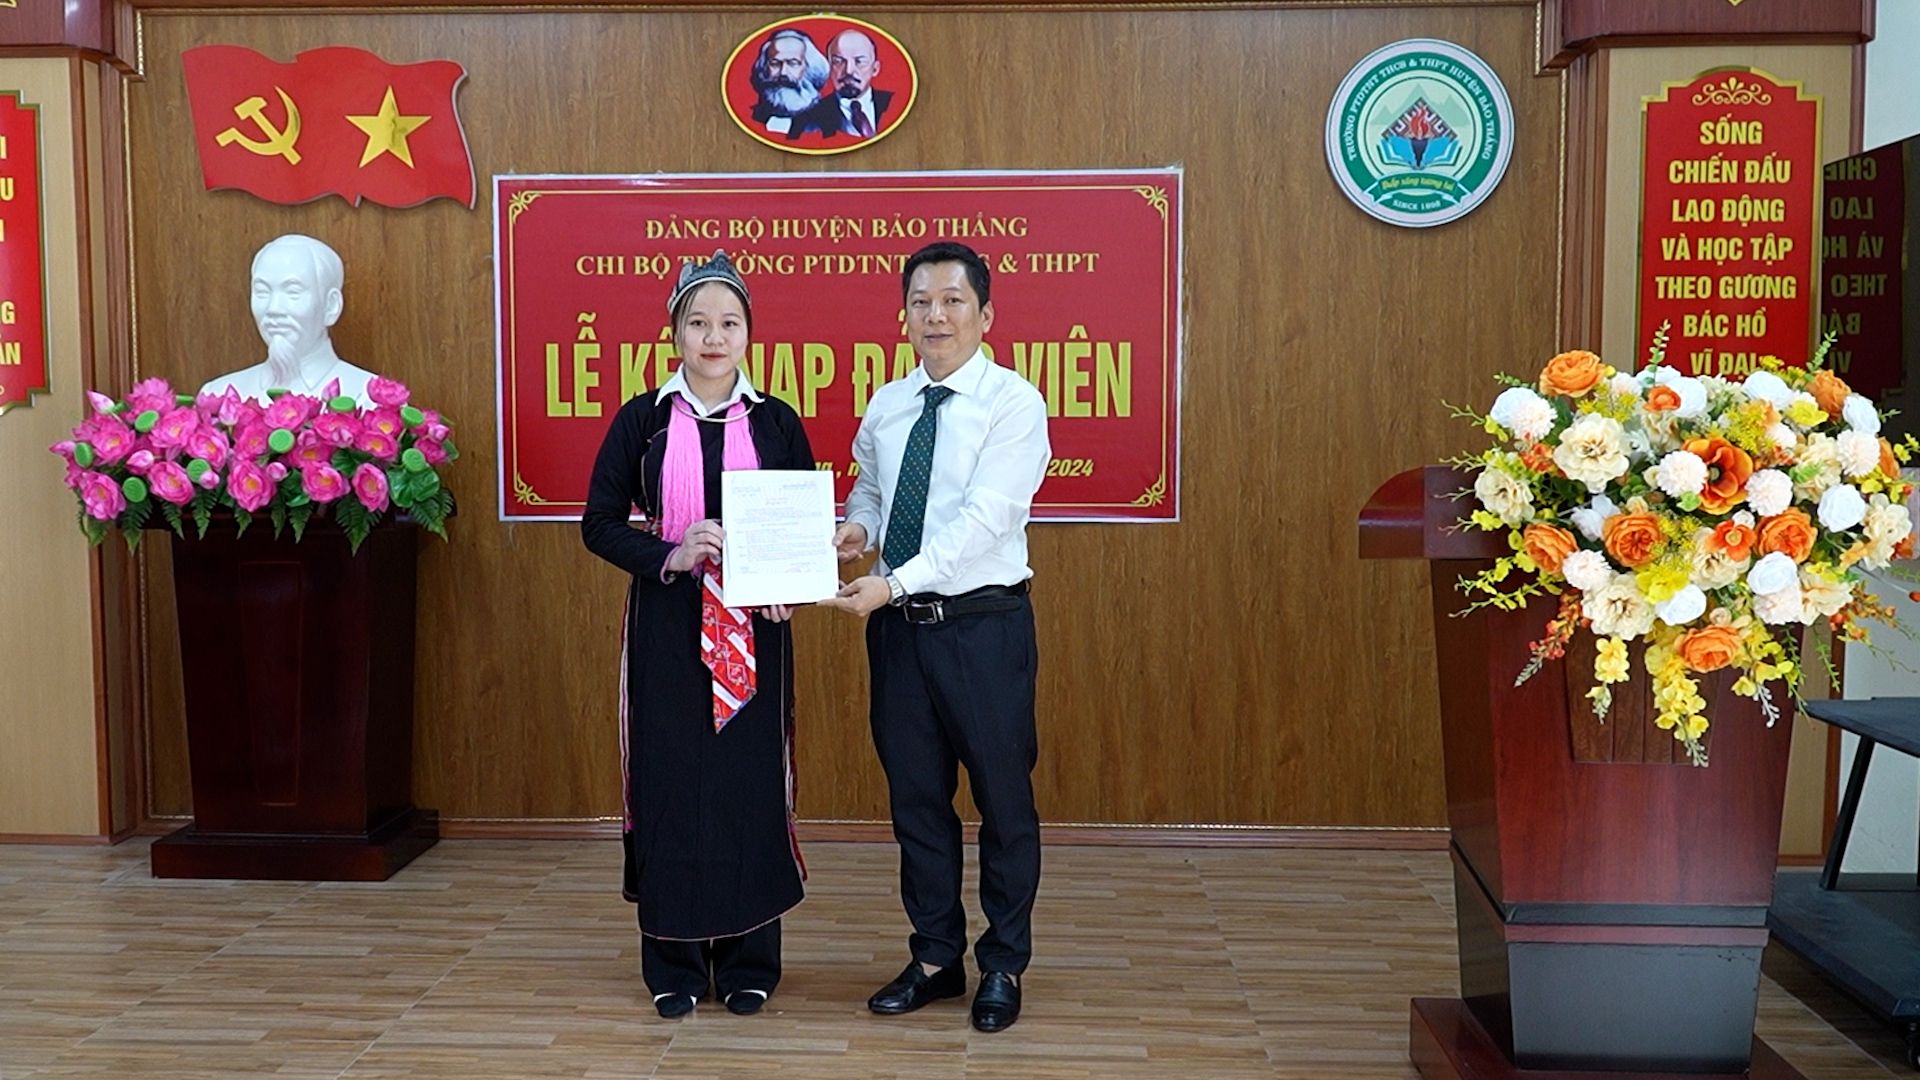 3 học sinh THPT đầu tiên của huyện Bảo Thắng được kết nạp Đảng